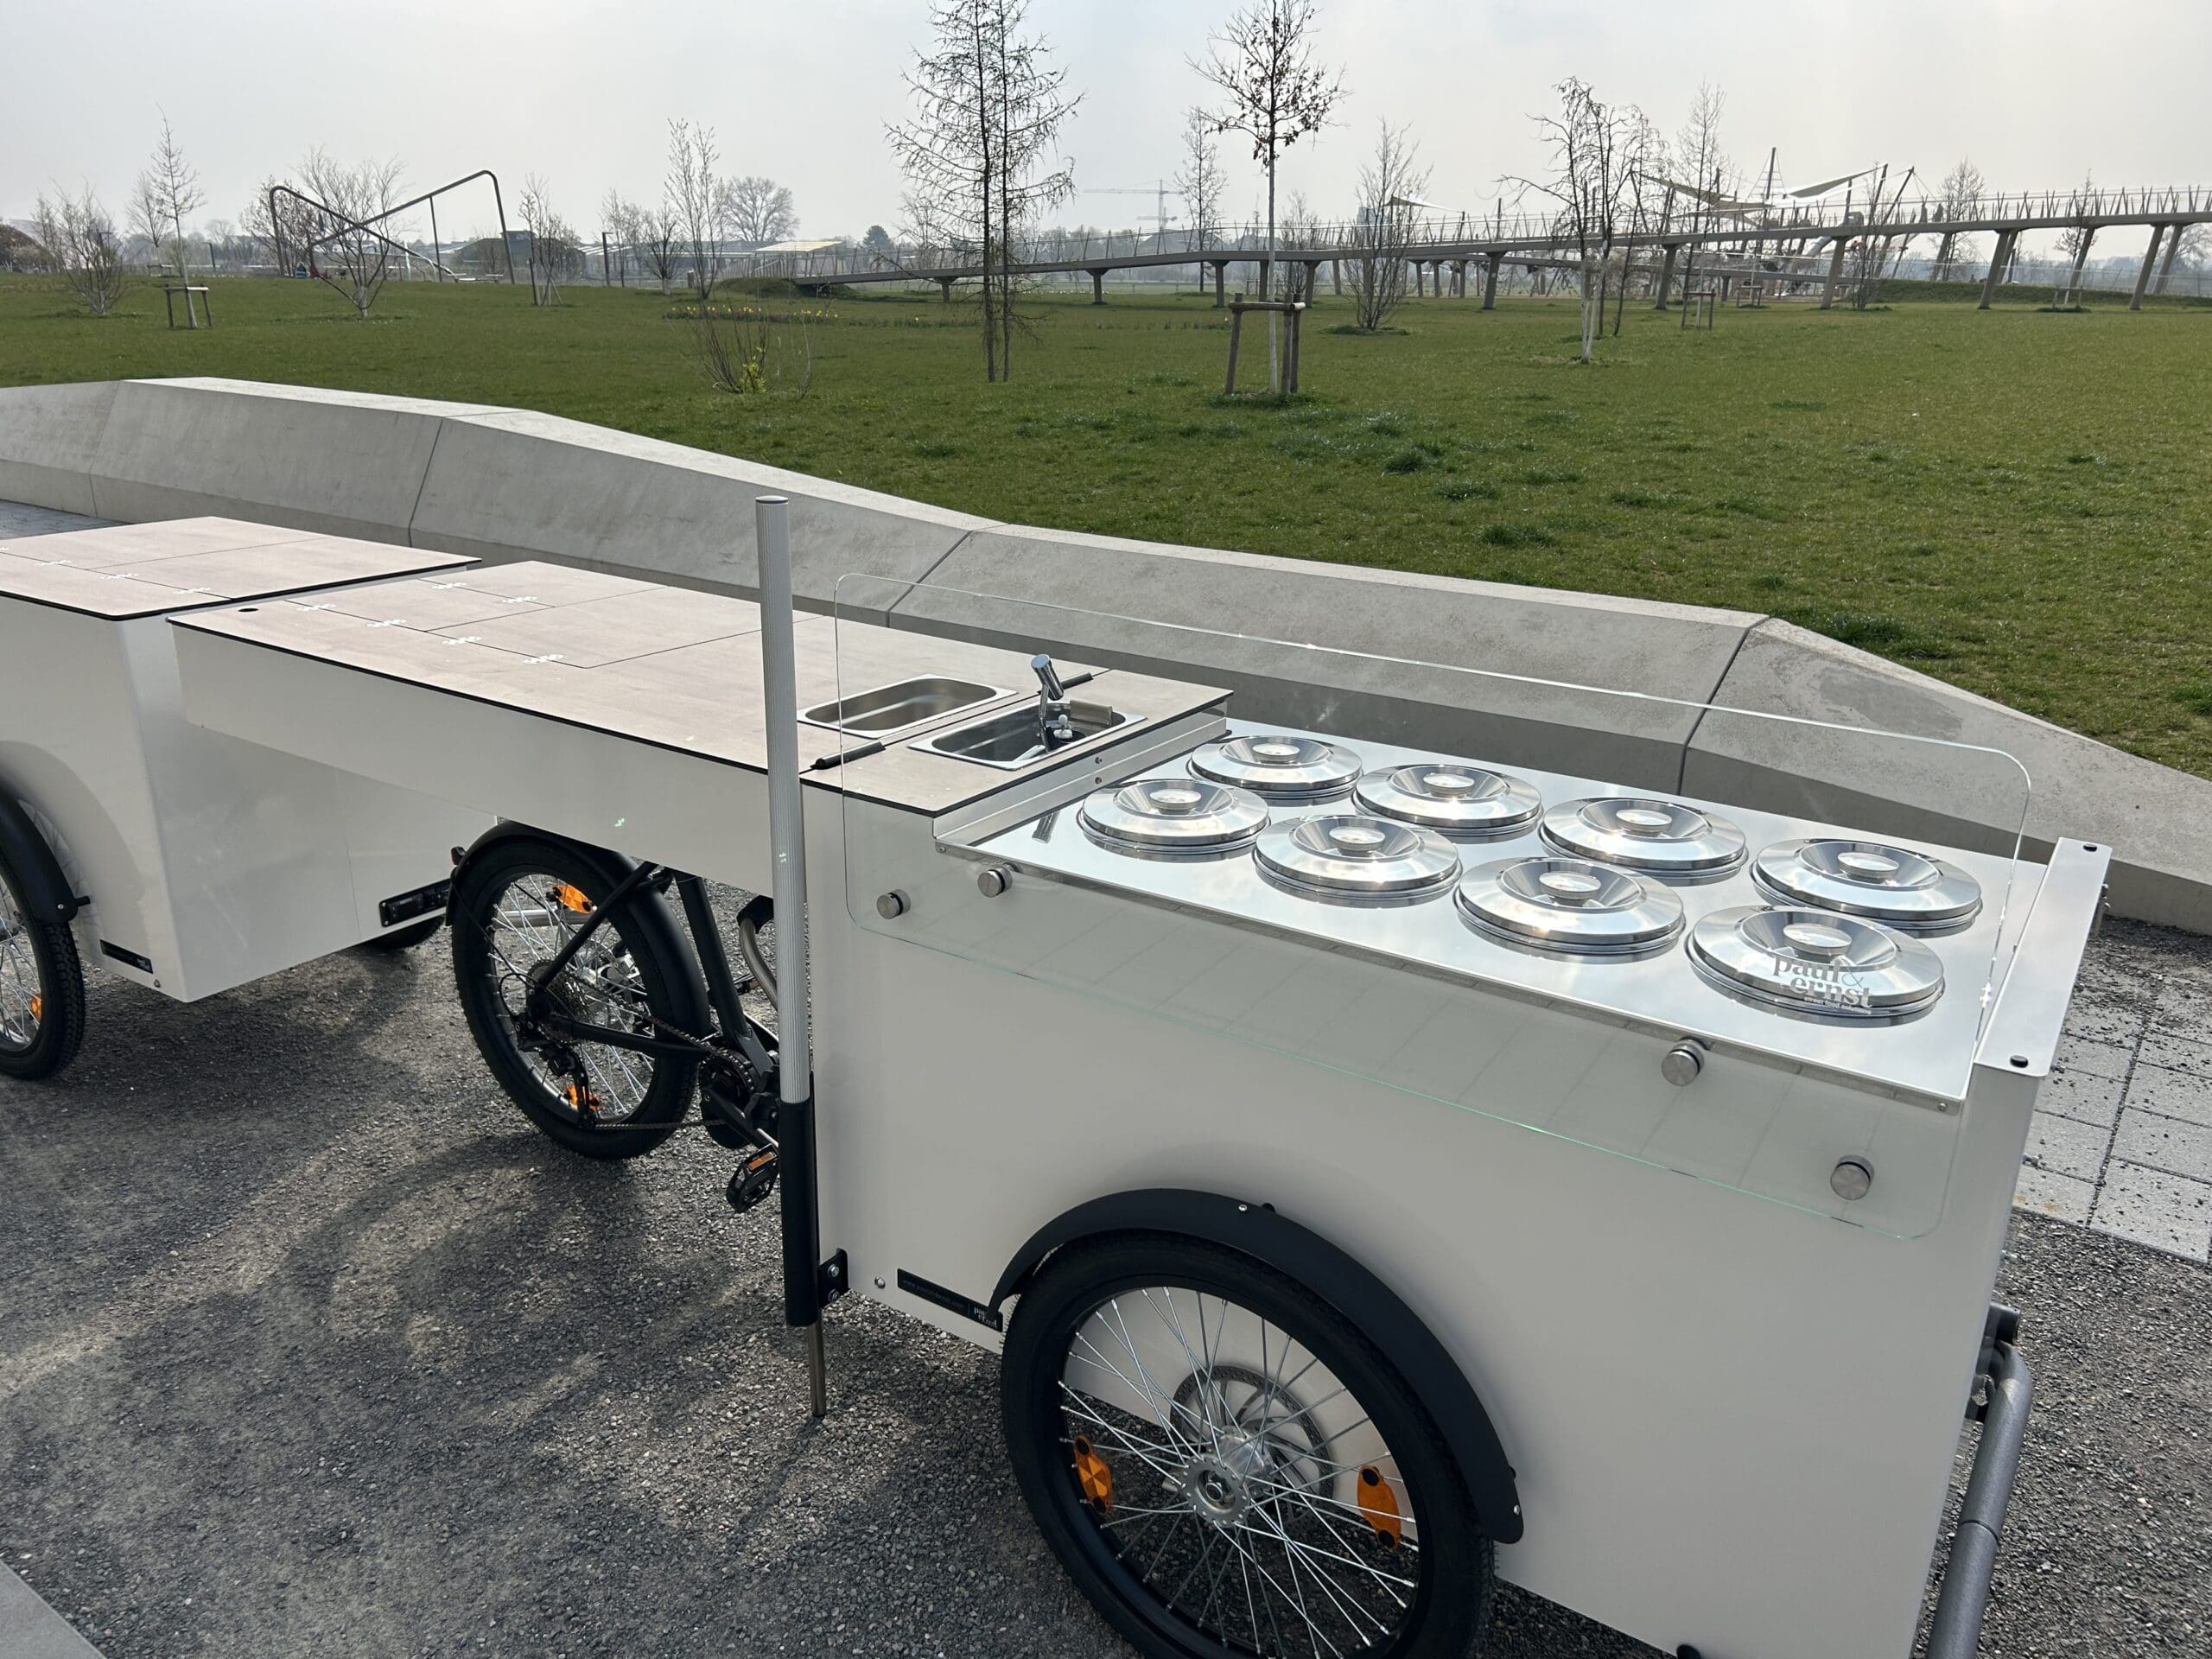 Mit dem neu angeschafften Bike können die Gäste im Sommer Eis und Getränke an der mobilen Bar genießen. © Vanessa Müller